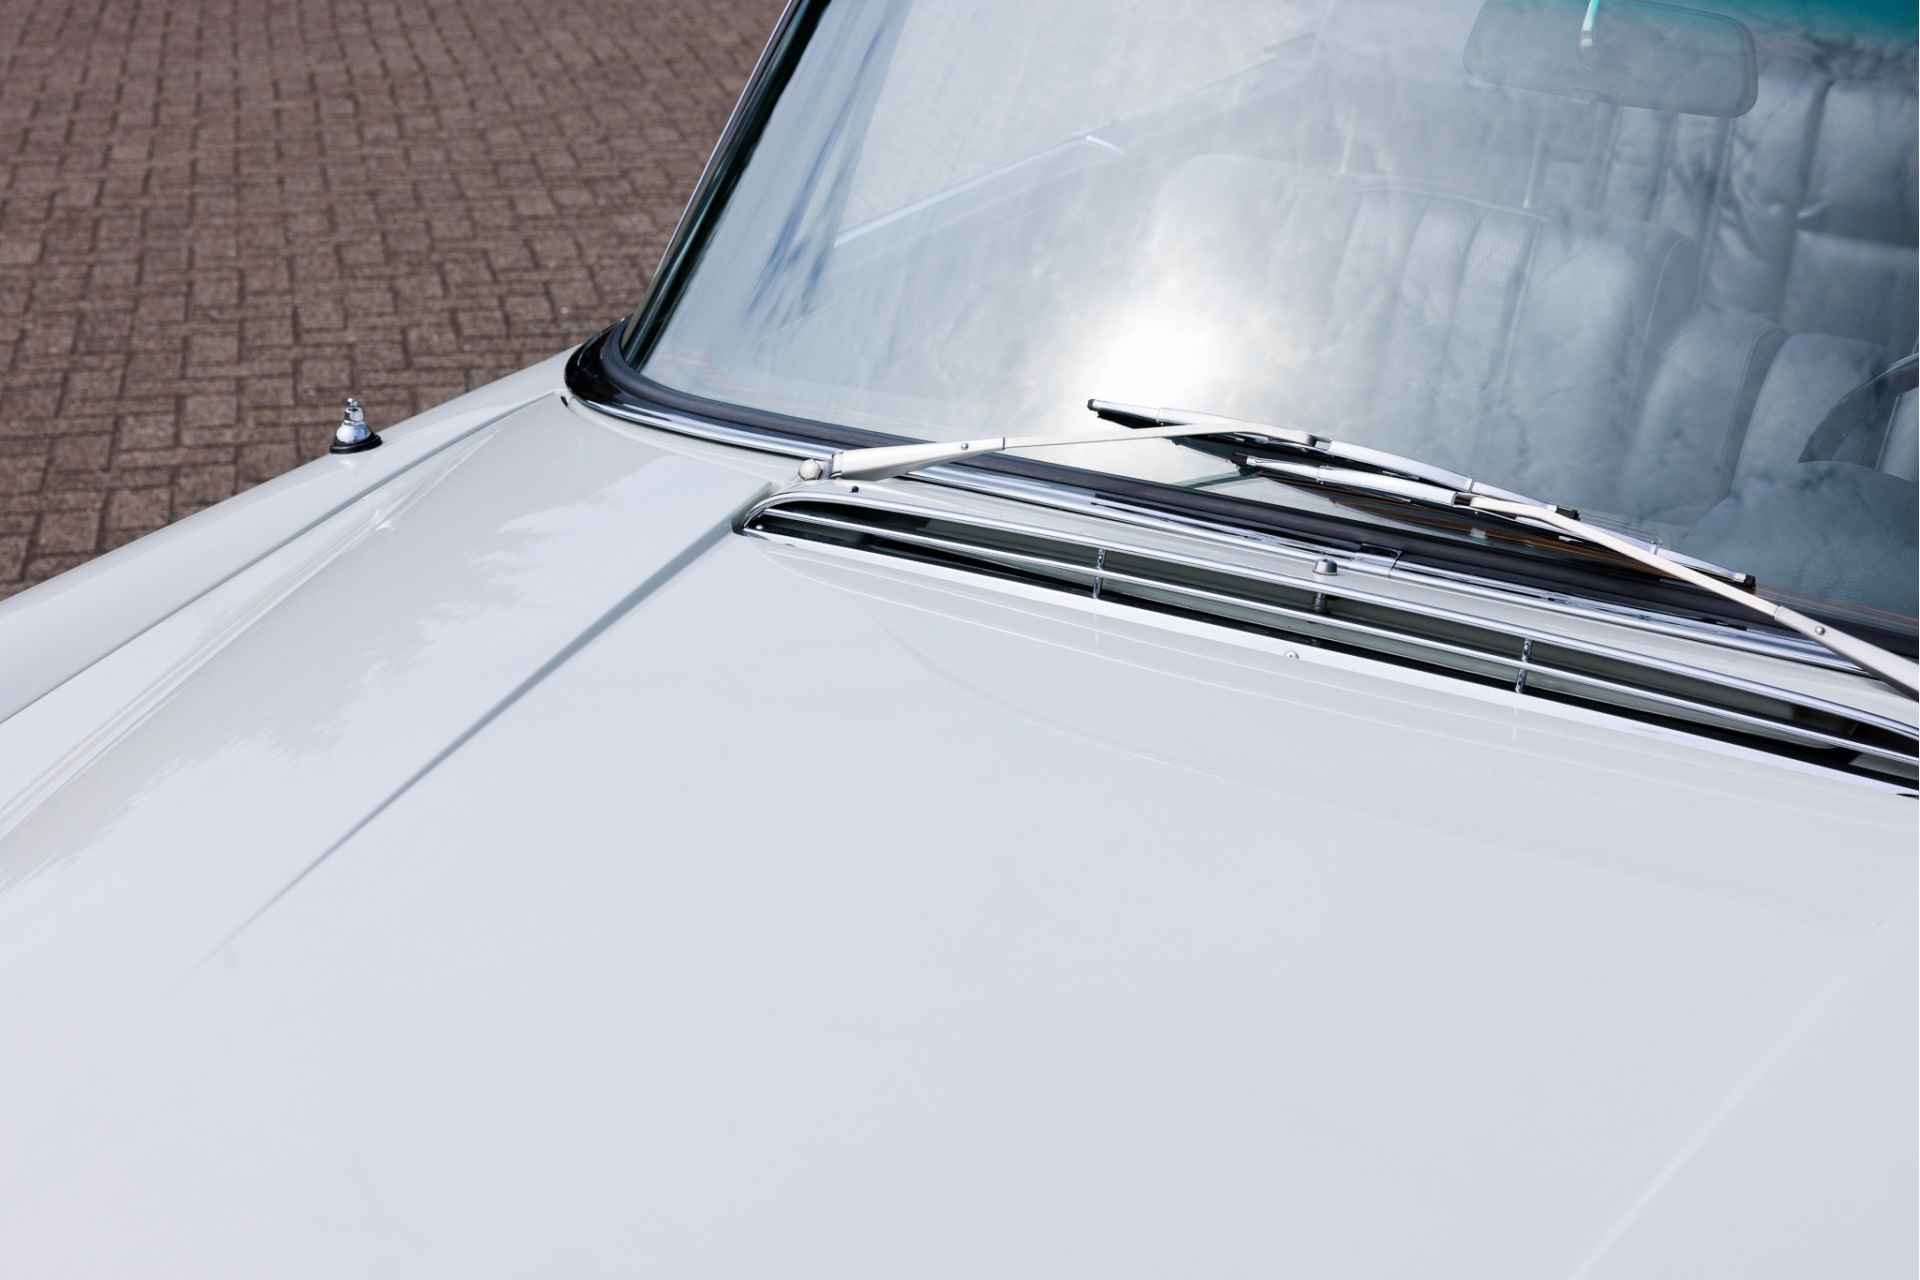 Mercedes-Benz W111 280 SE Cabriolet Volledig gerestaureerd  Verkoop in opdracht | Flachkühler | Compleet gerestaureerd - 14/31